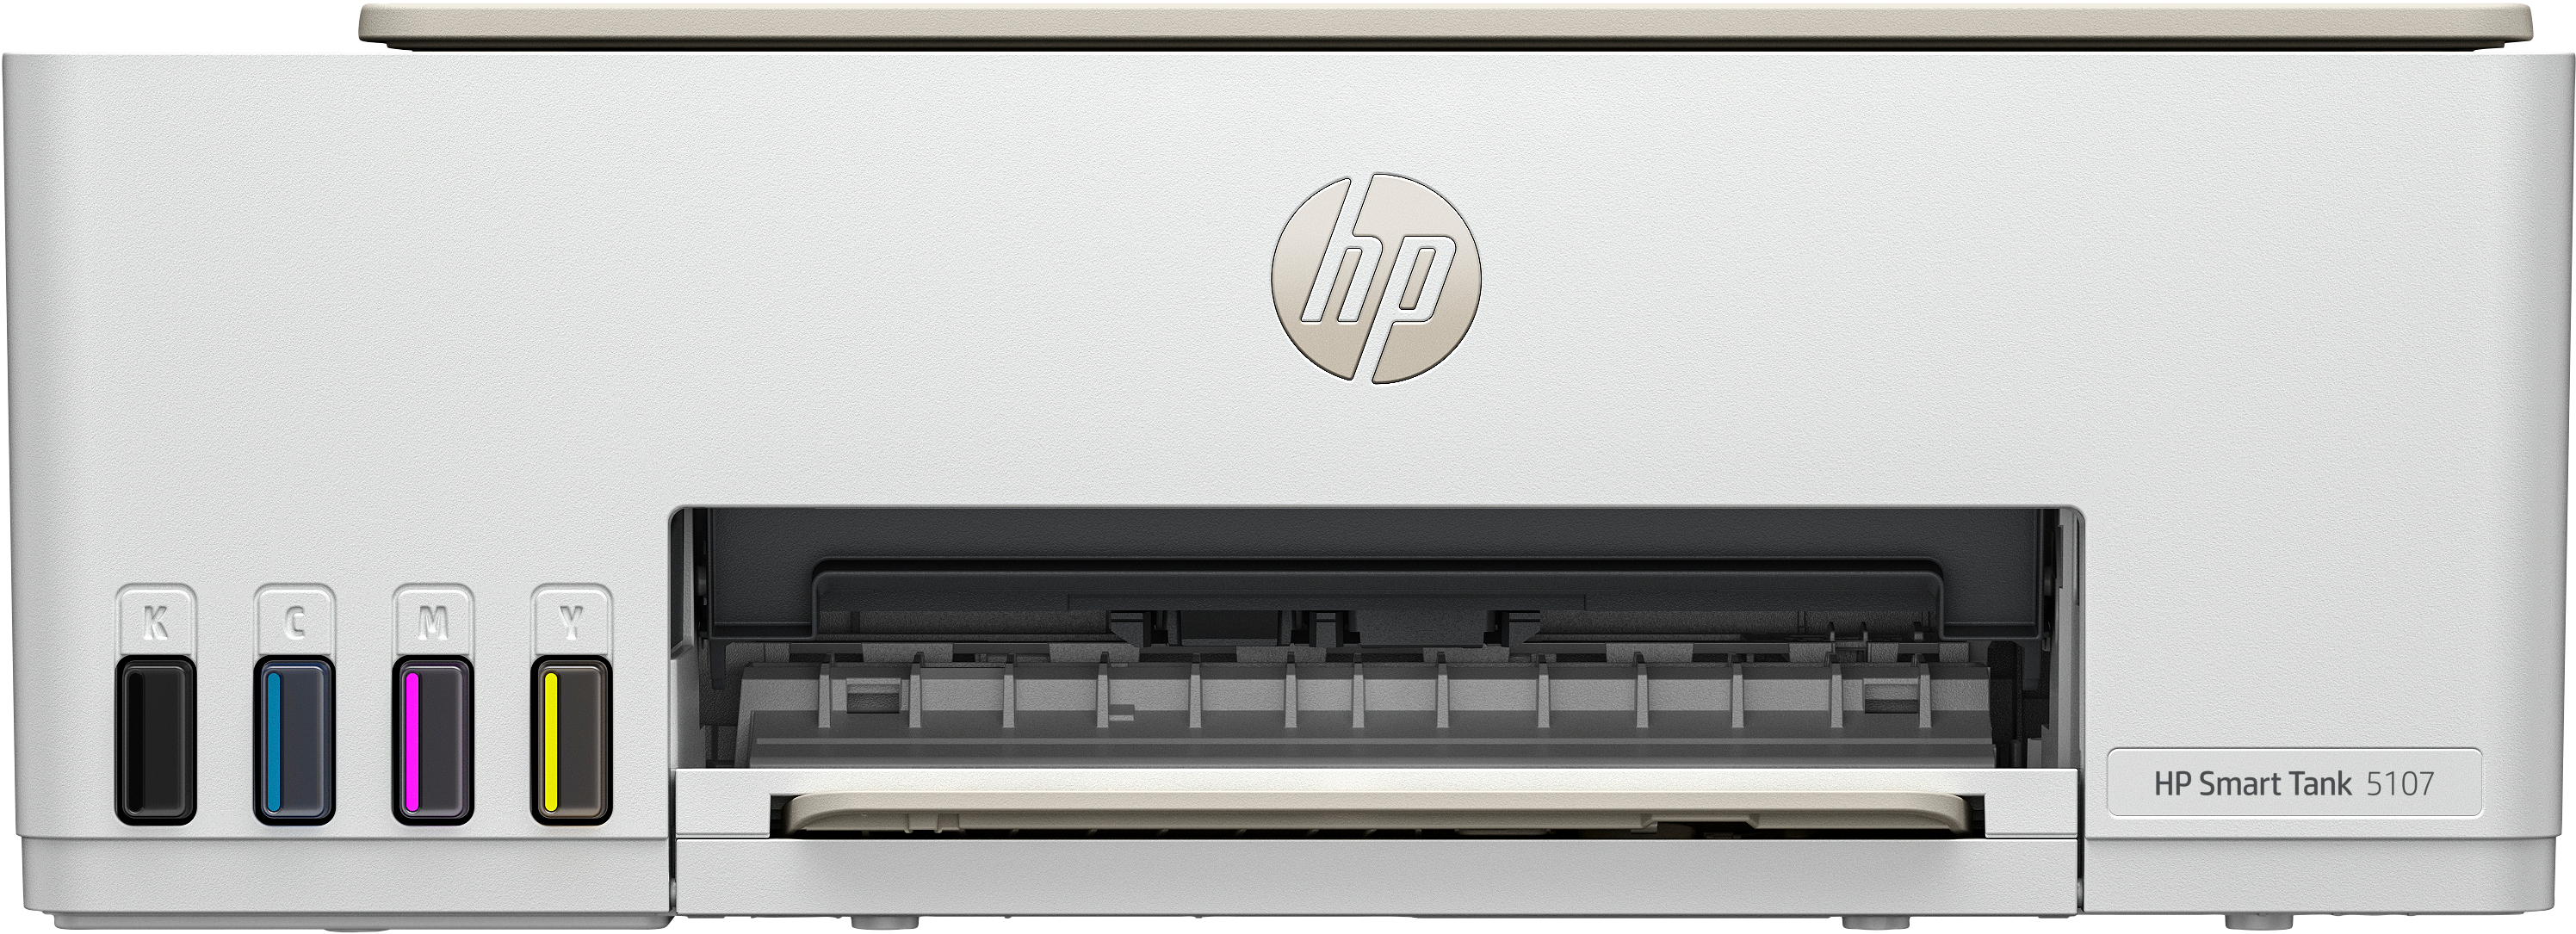 HP Imprimante Tout-en-un Smart Tank 5107, Couleur, Imprimante pour Maison et Bureau à domicile, Impression, copie, numérisation, Sans fil. Réservoir d’imprimante haute capacité. Impression depuis un téléphone ou une tablette. Numérisation vers PDF